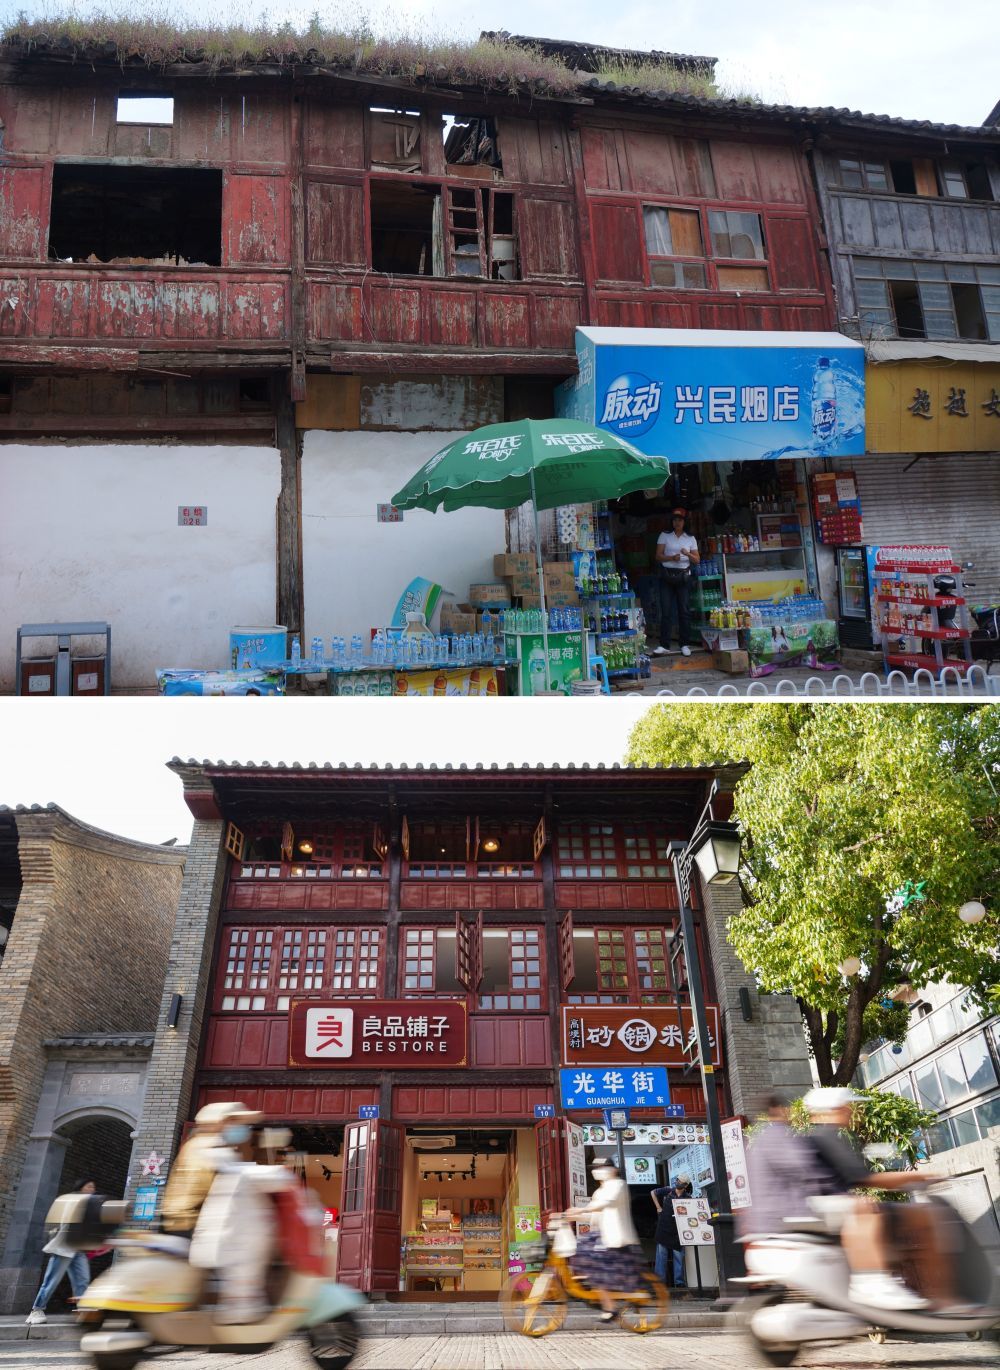 拼版照片：上图是修缮前的光华街街景（资料照片，新华社发陈忆秋摄）；下图是4月24日，人们在光华街上经过。